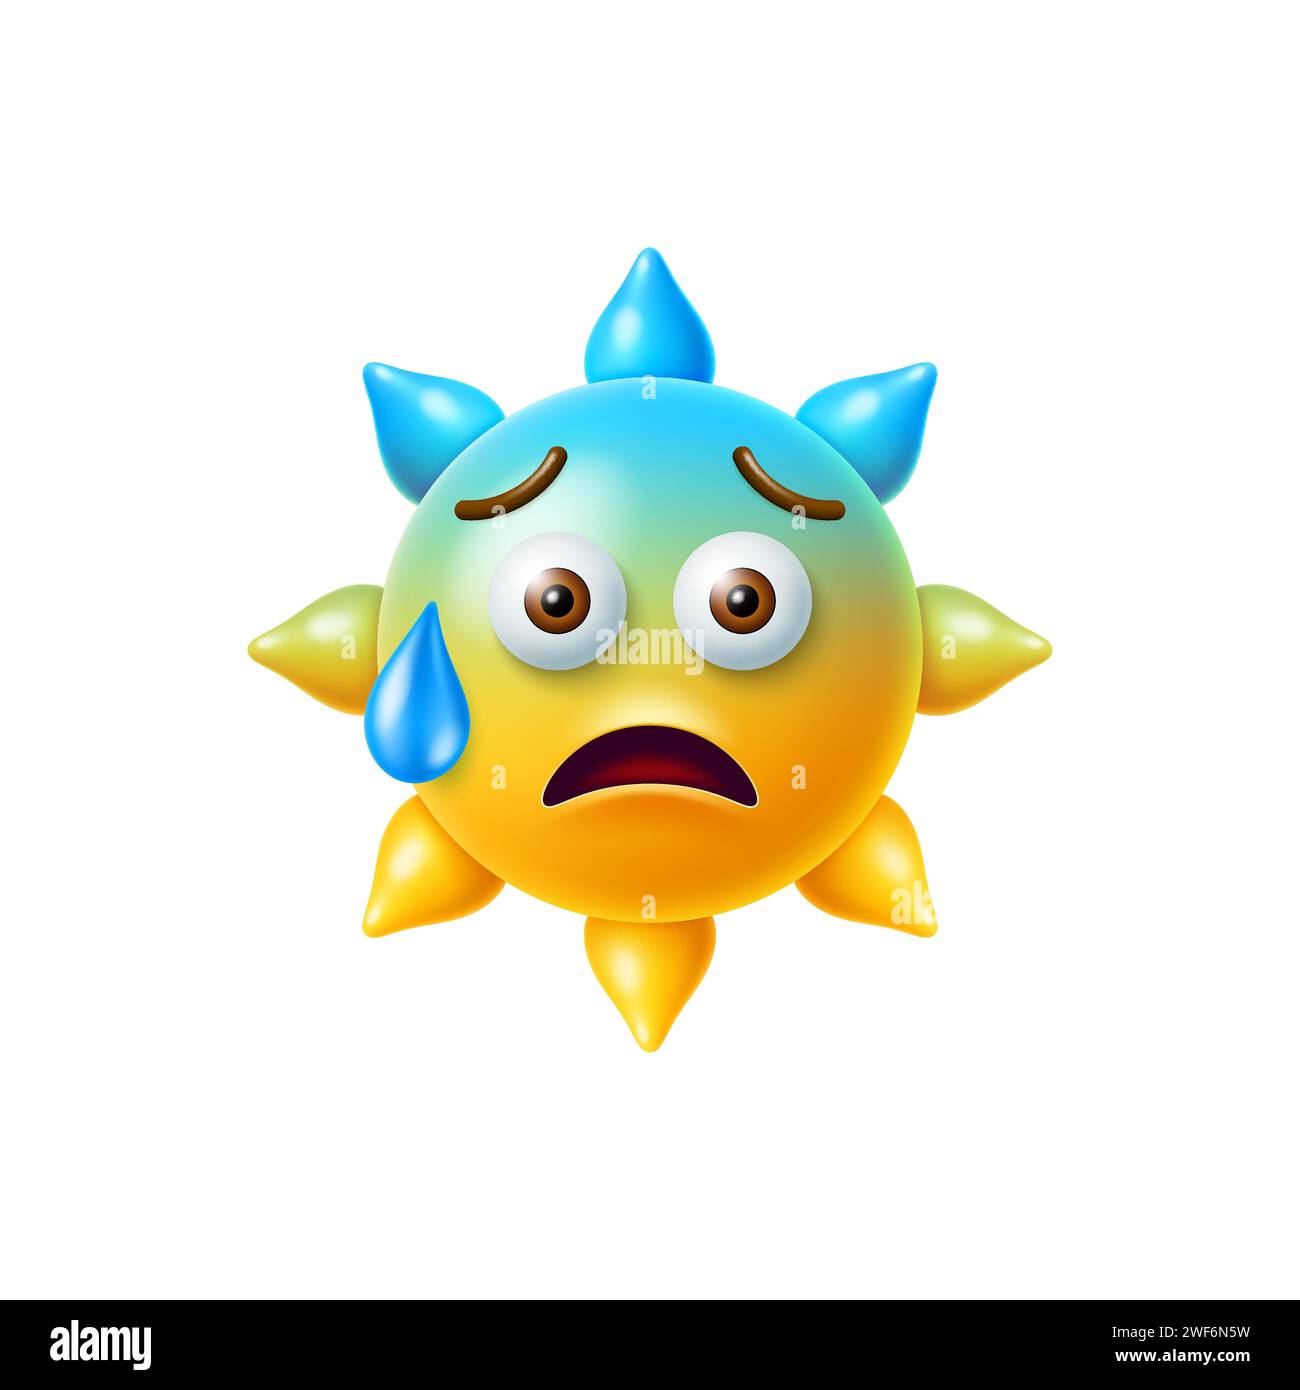 emoji soleil 3d avec visage anxieux et une perle de sueur, caractère jaune frais et mignon ensoleillé capturant le mélange de chaleur, de choc et de nervosité. Vecteur isolé émoticône effrayé ou malheureux pour le chat d'application Illustration de Vecteur